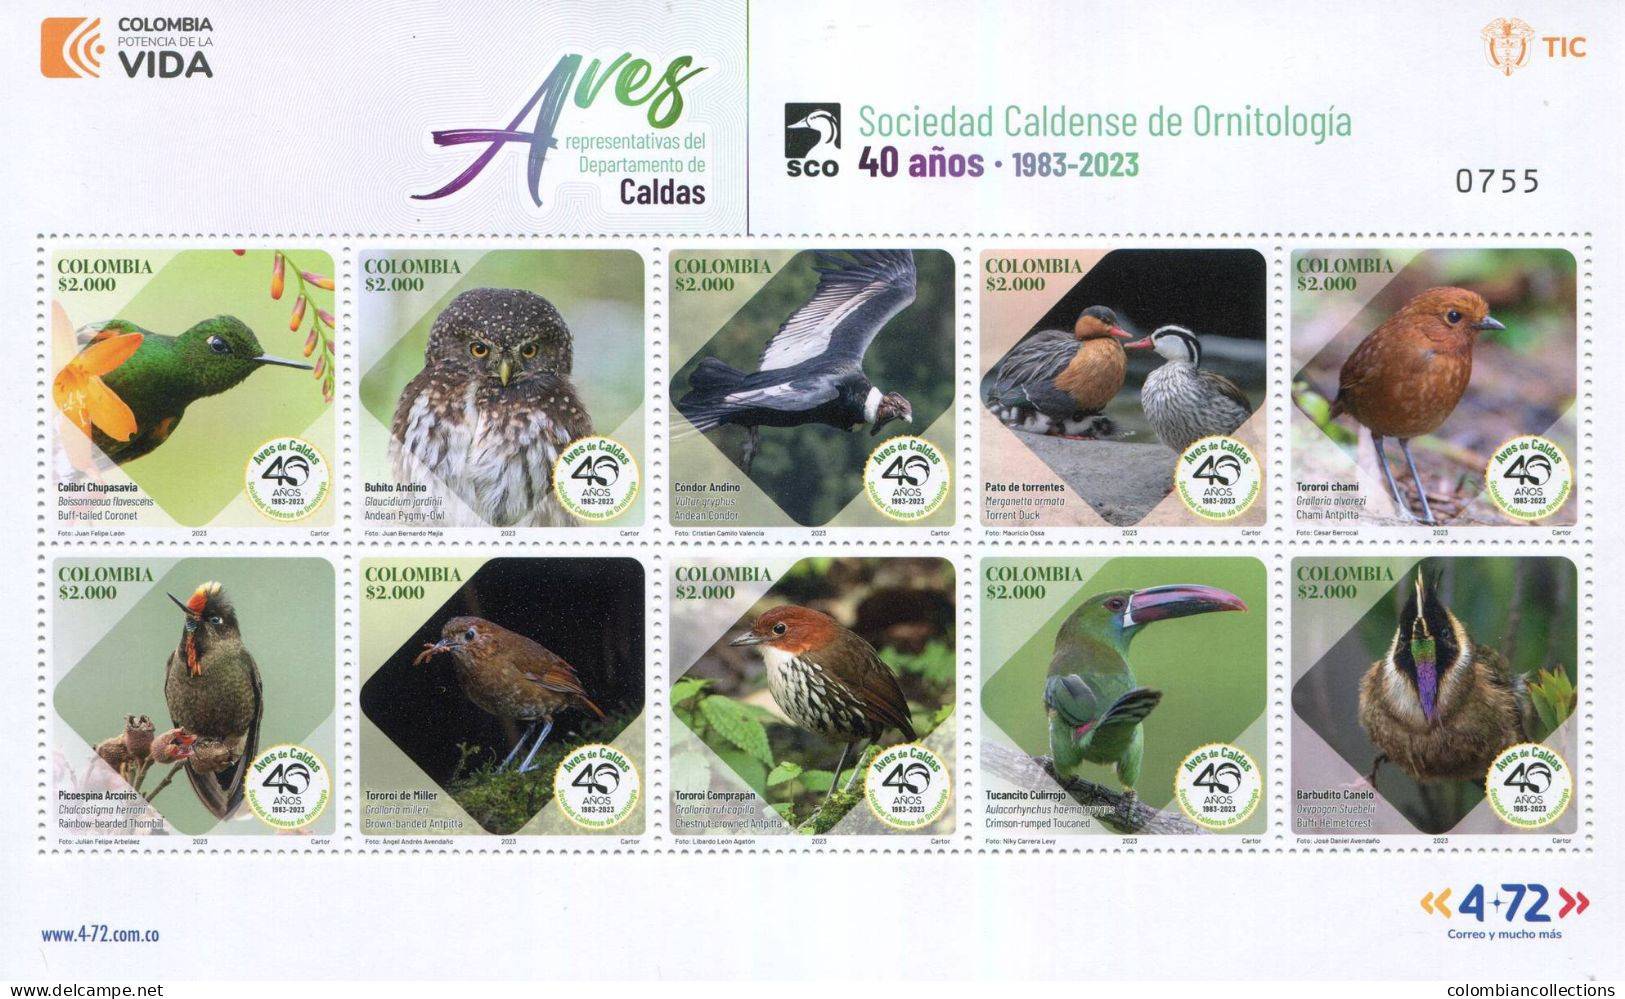 Lote 2023-8P,  Colombia, 2023, Pliego, Sheet, Aves Representativas Del Departamento De Caldas, Bird - Colombia